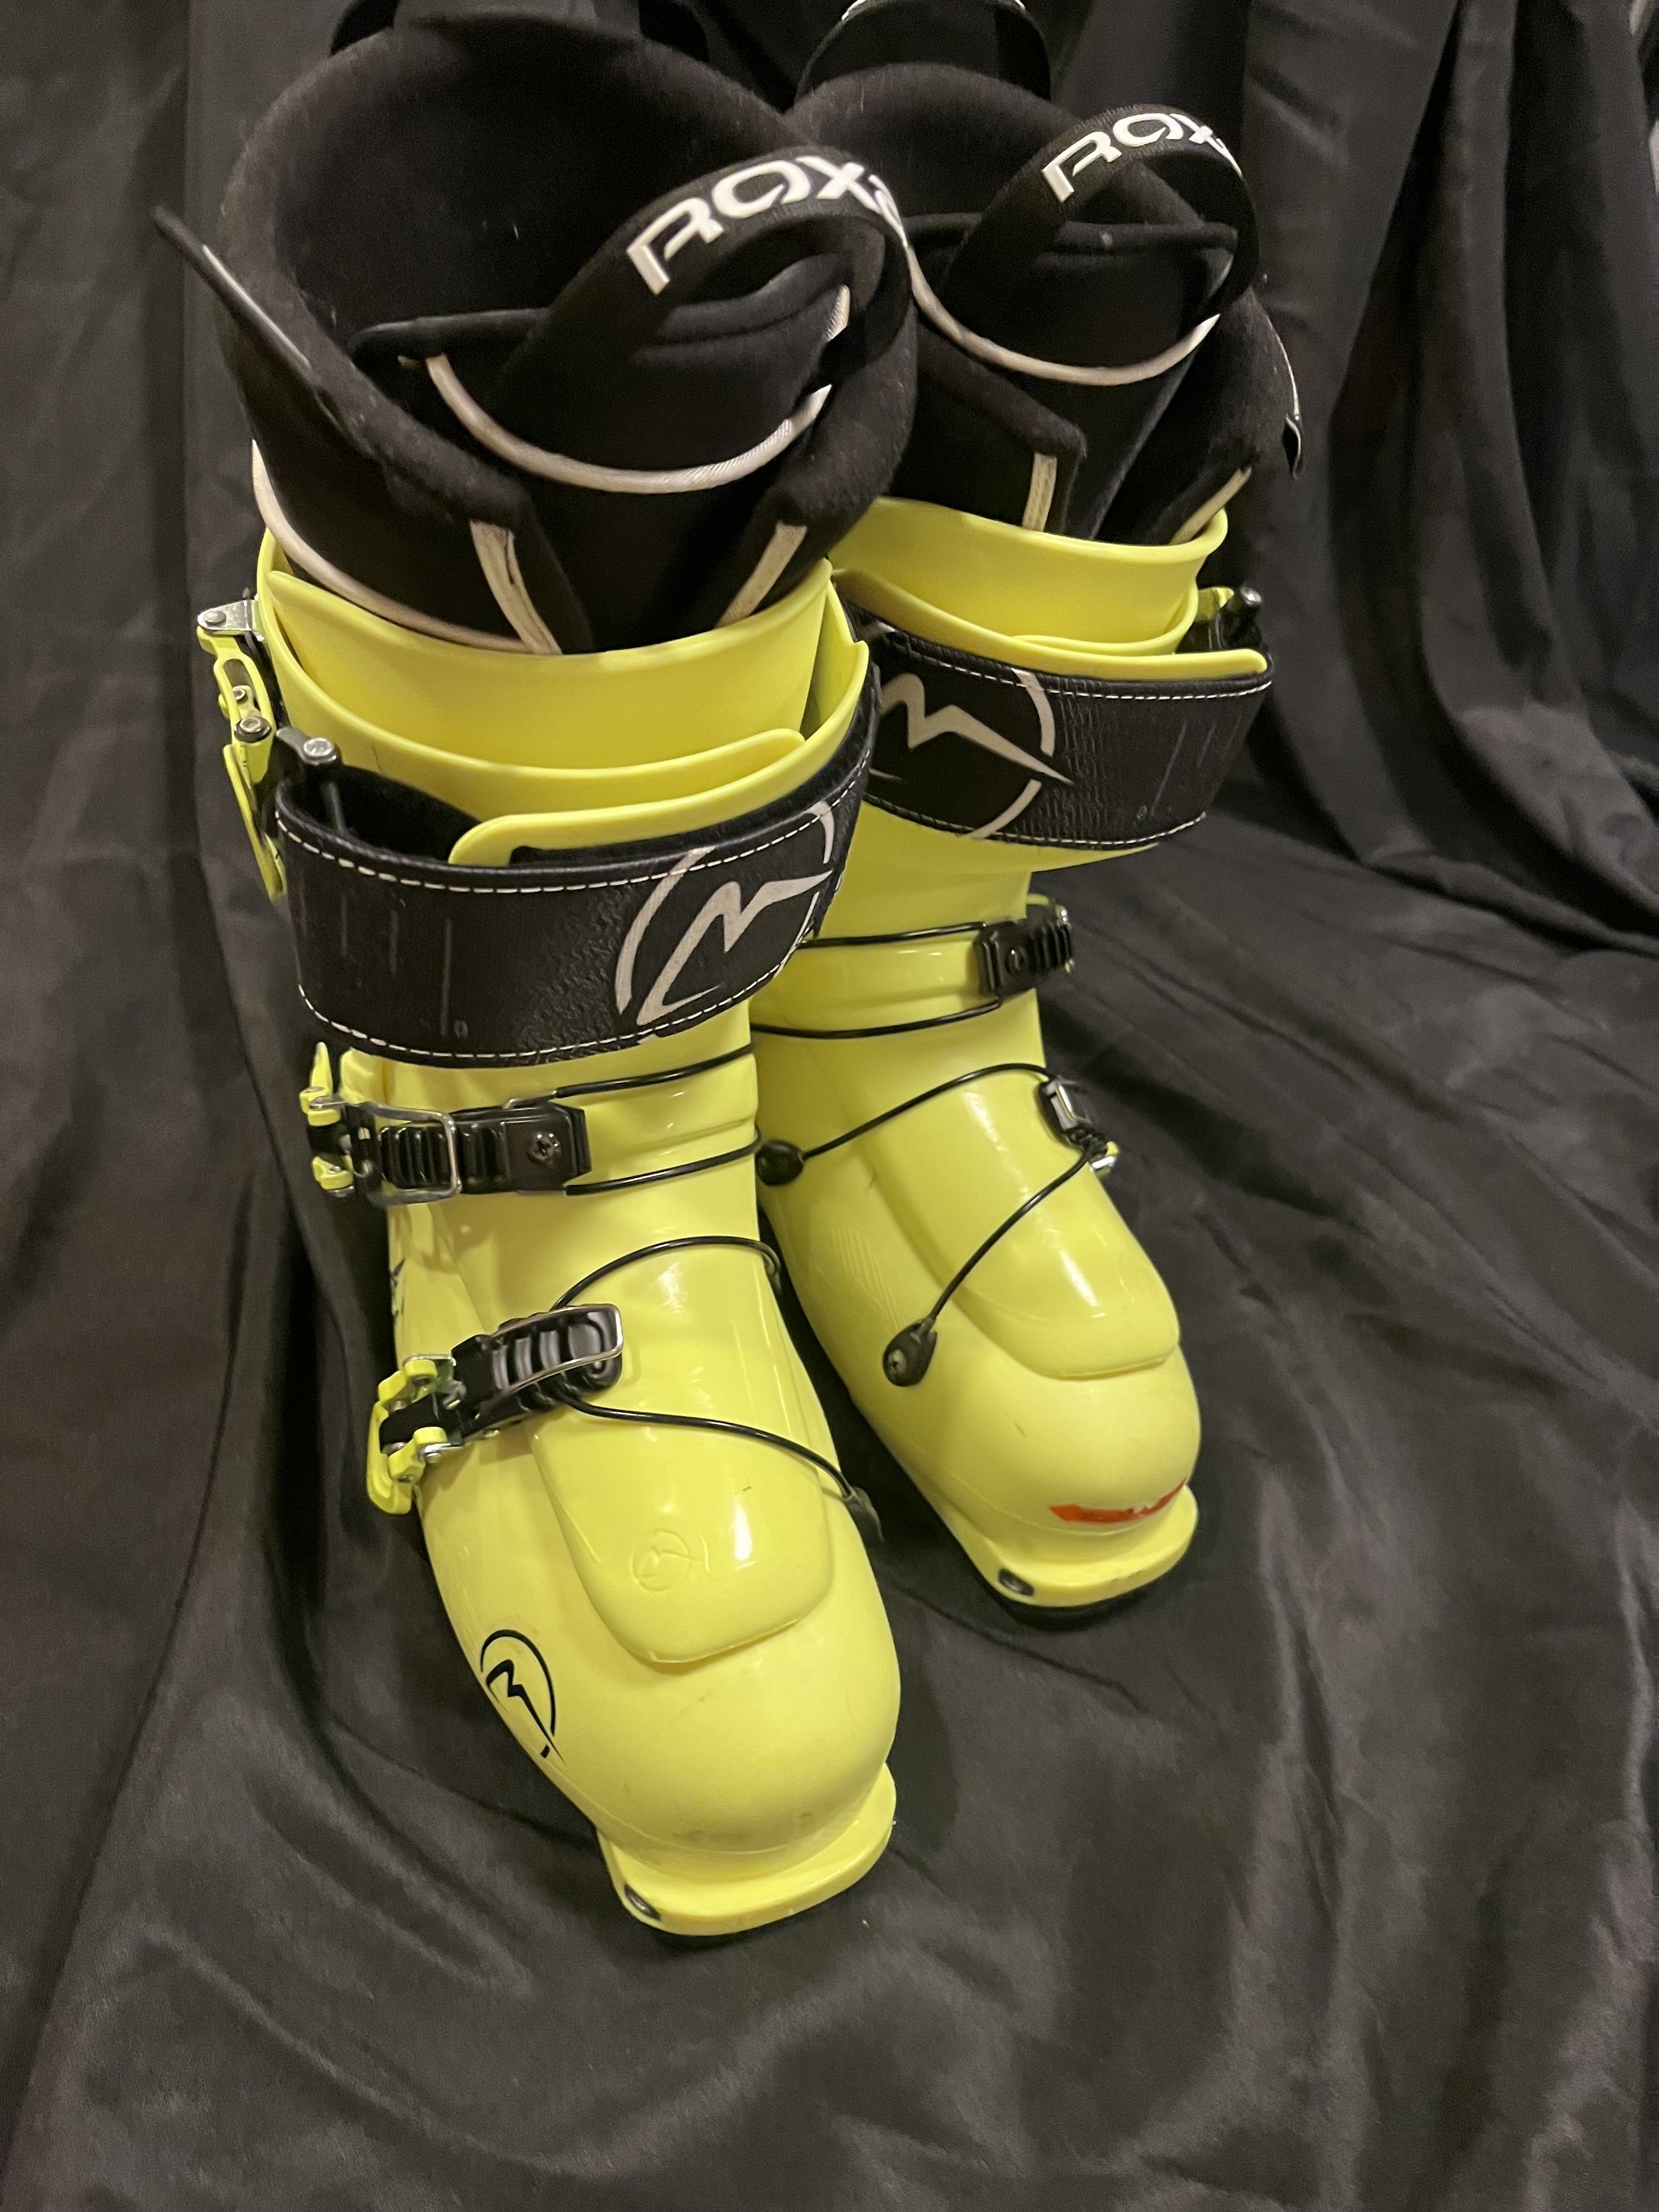 Dalbello Boots Lupo 130 C - Ski Gear 2019 